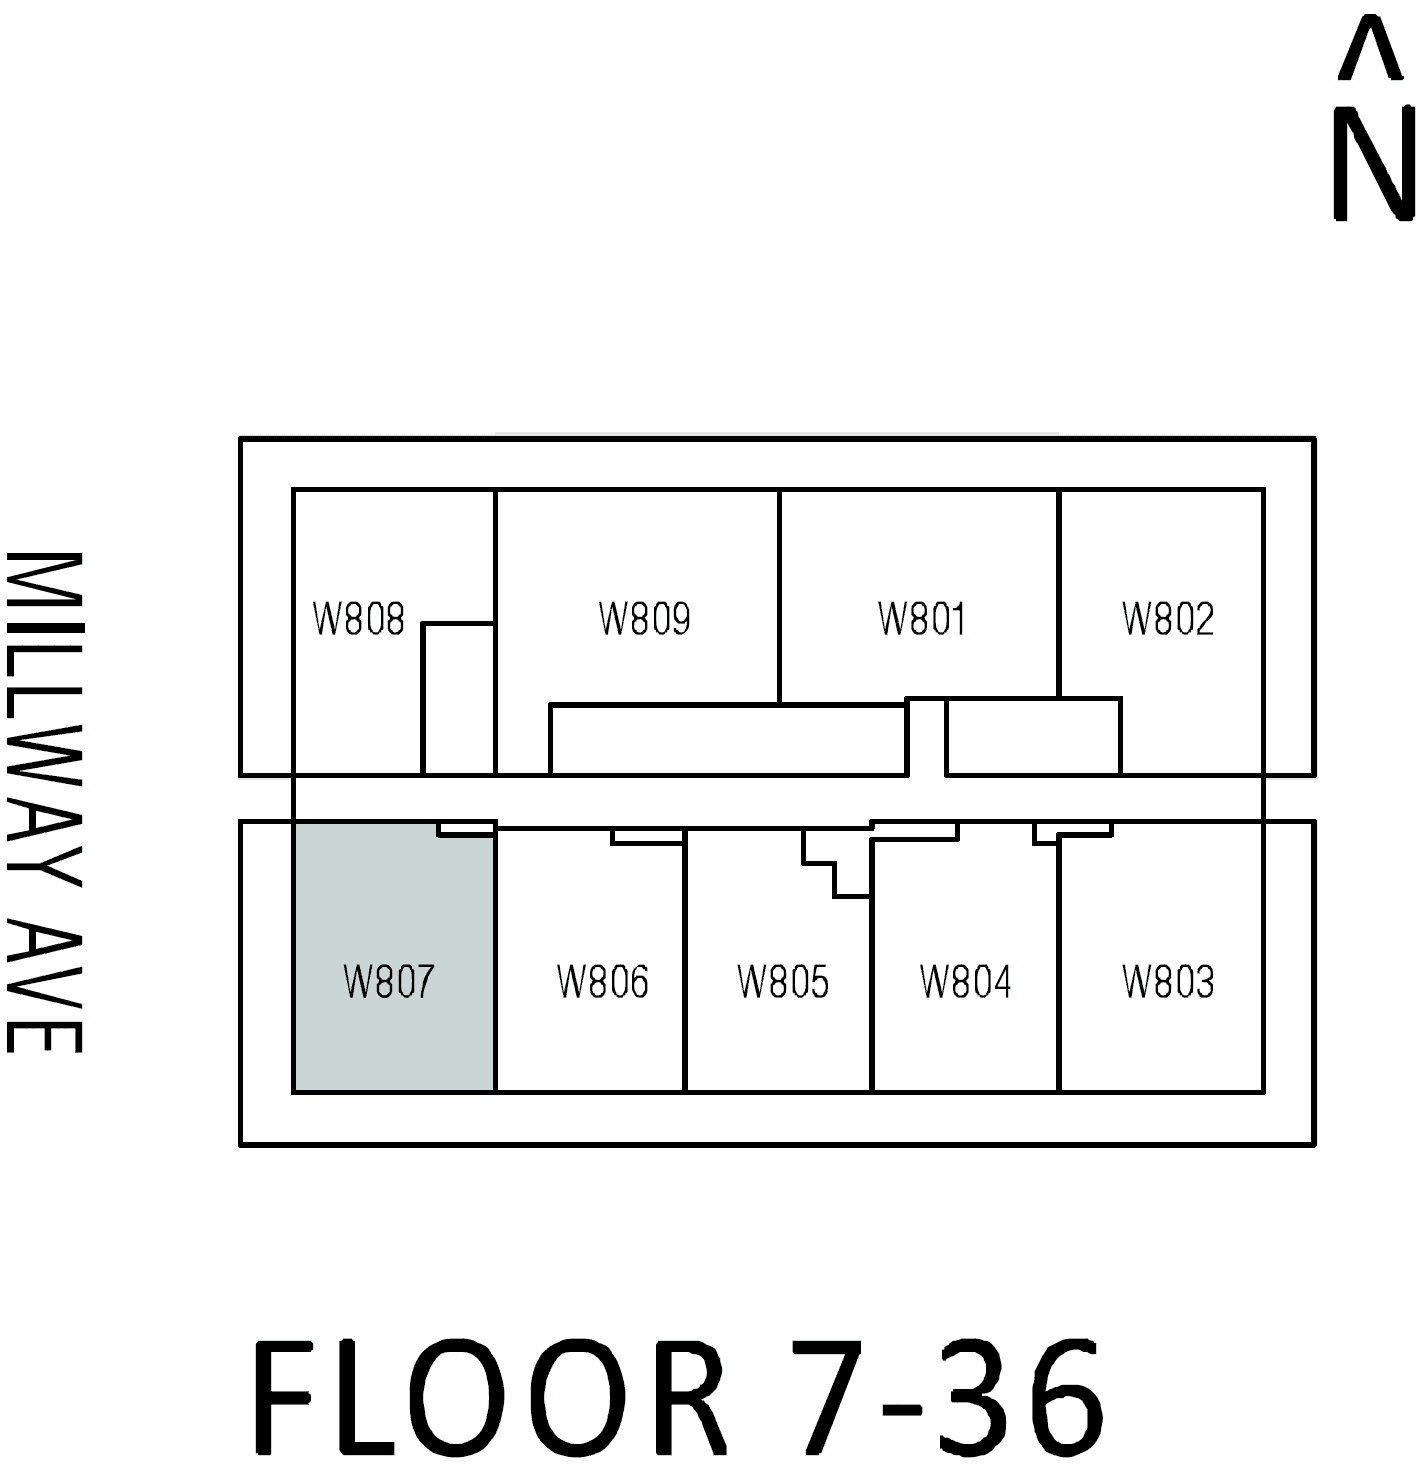 W07 floor plan